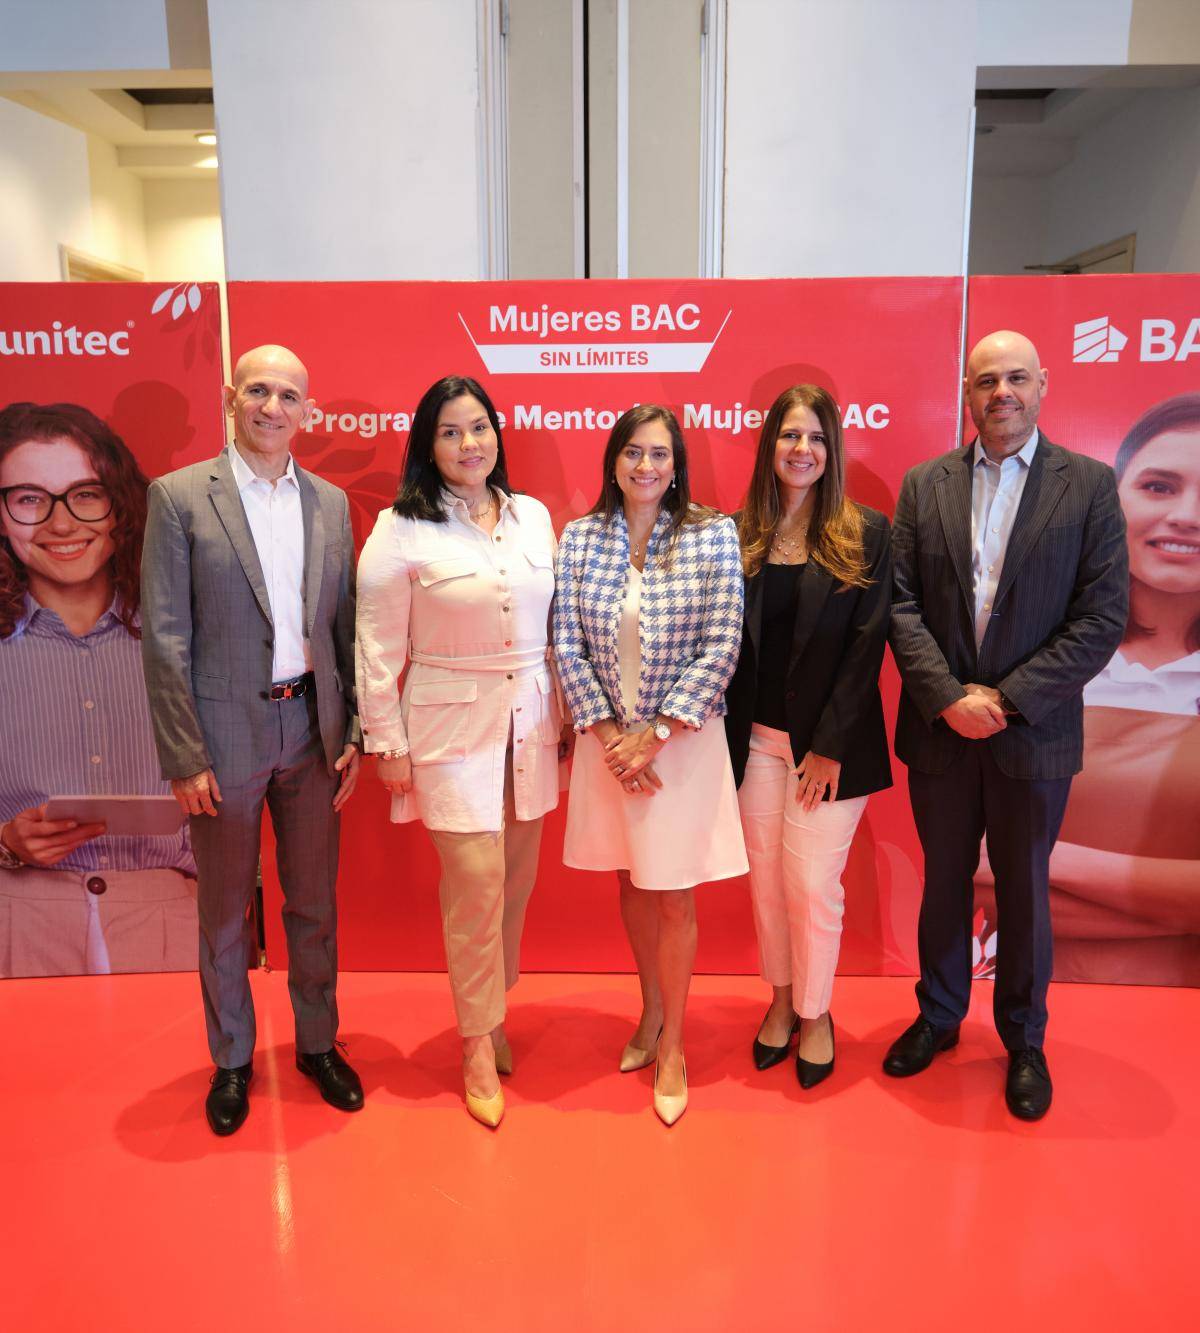 <b>Ejecutivos de BAC: Mauricio Estrada, Valeria Ríos, Melissa Stefan y Sebastián Hidalgo junto a Roxana Espinal (ejecutiva de Unitec, segunda de izquierda a derecha).</b>